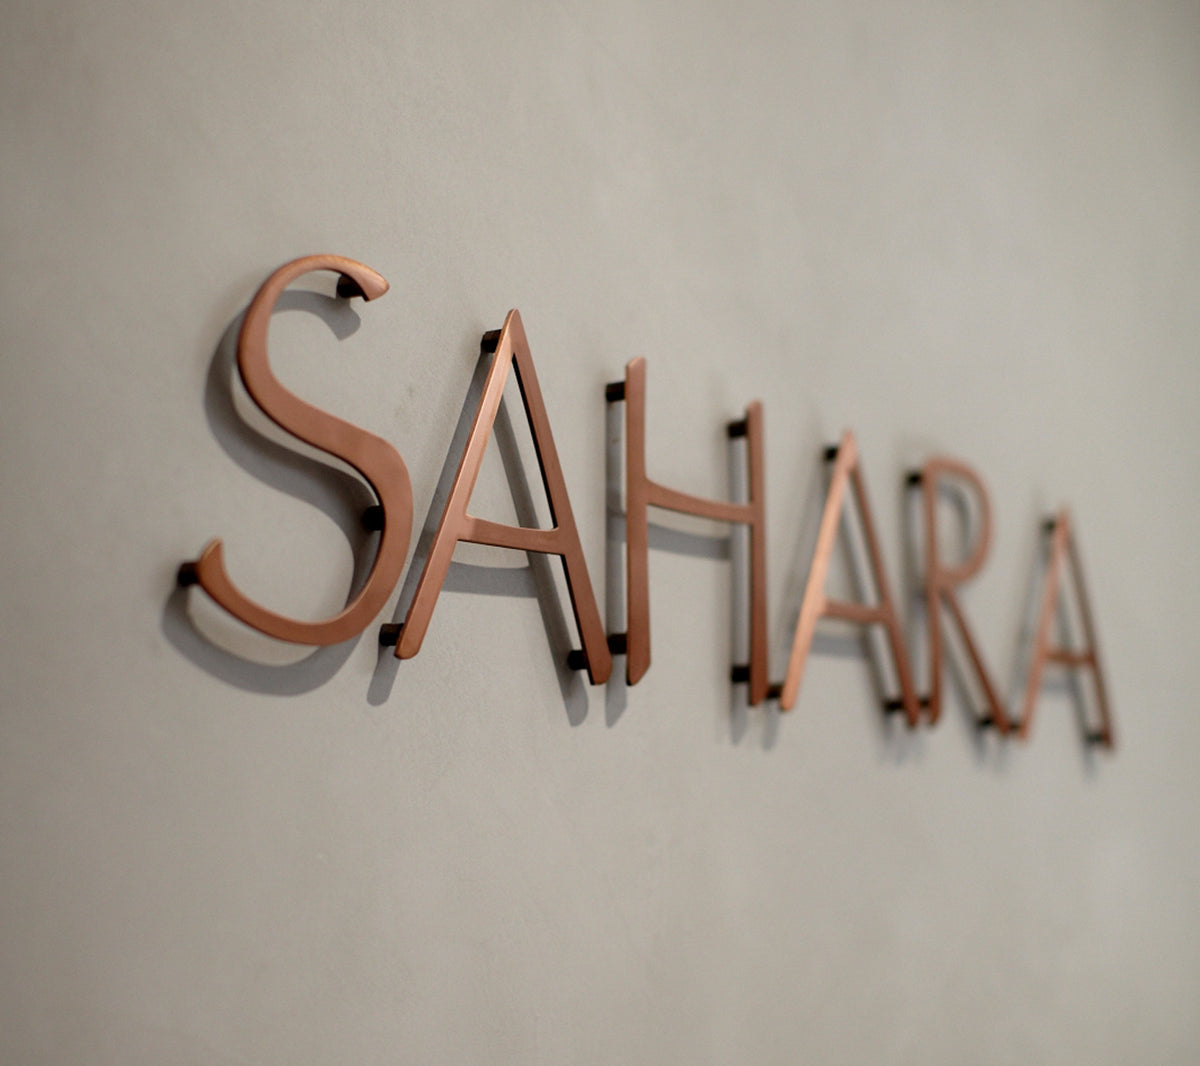 sahara sign